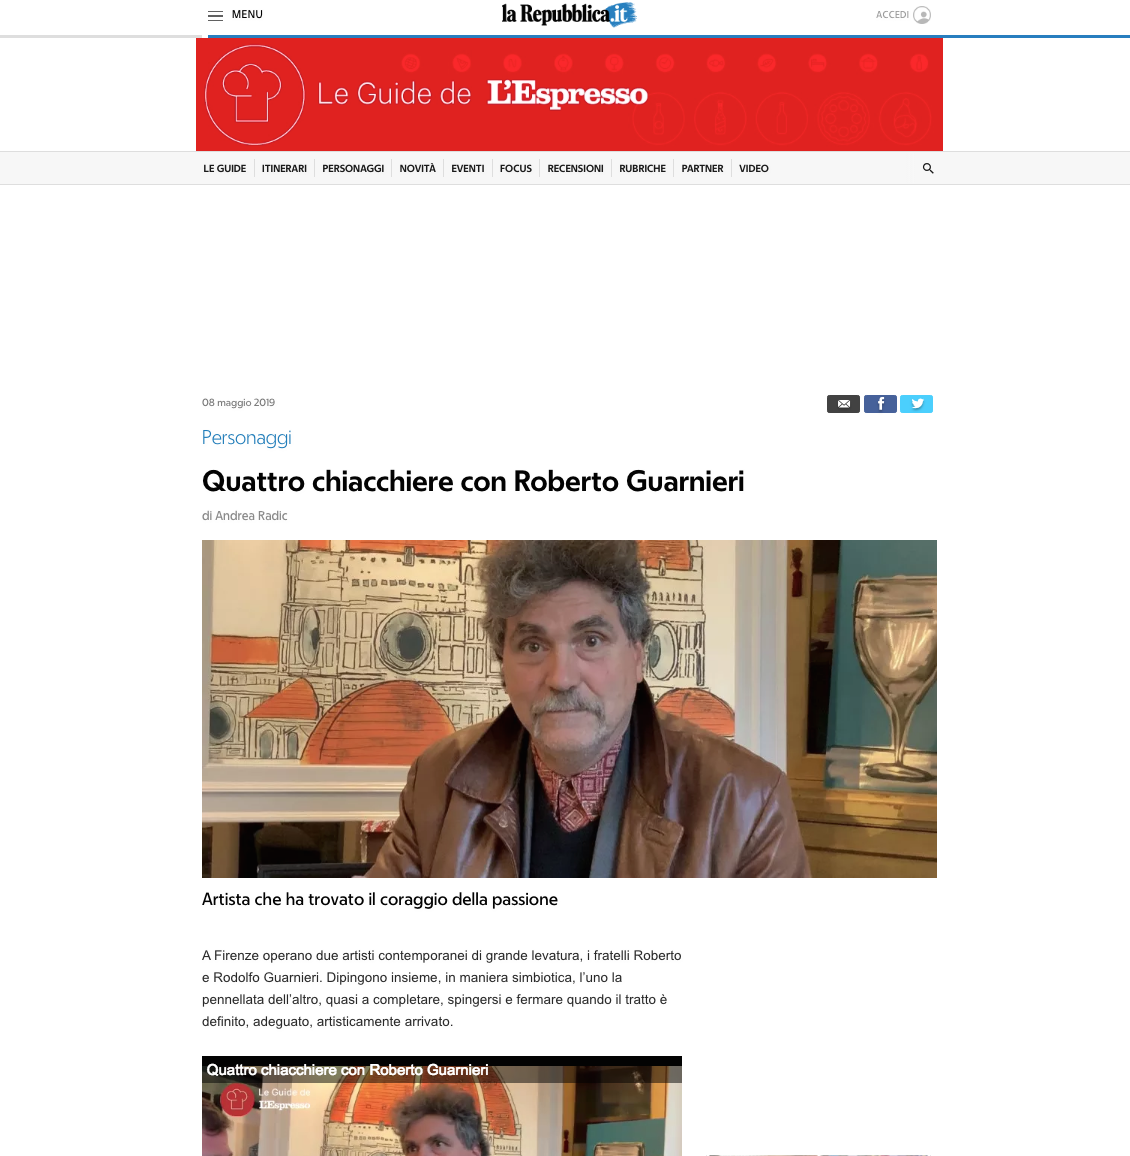 A chat with Roberto Guarnieri by Le Guide del’Espresso